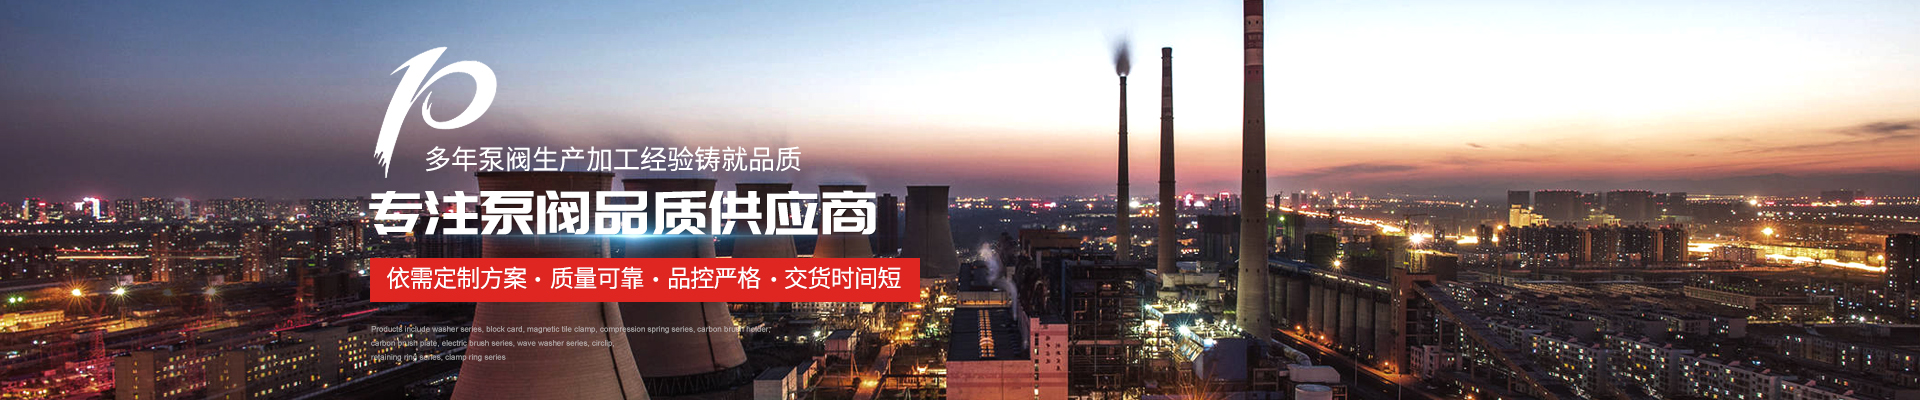 3CF控制柜_3CF消防柜公司企業資質 - 上海高適泵閥有限公司